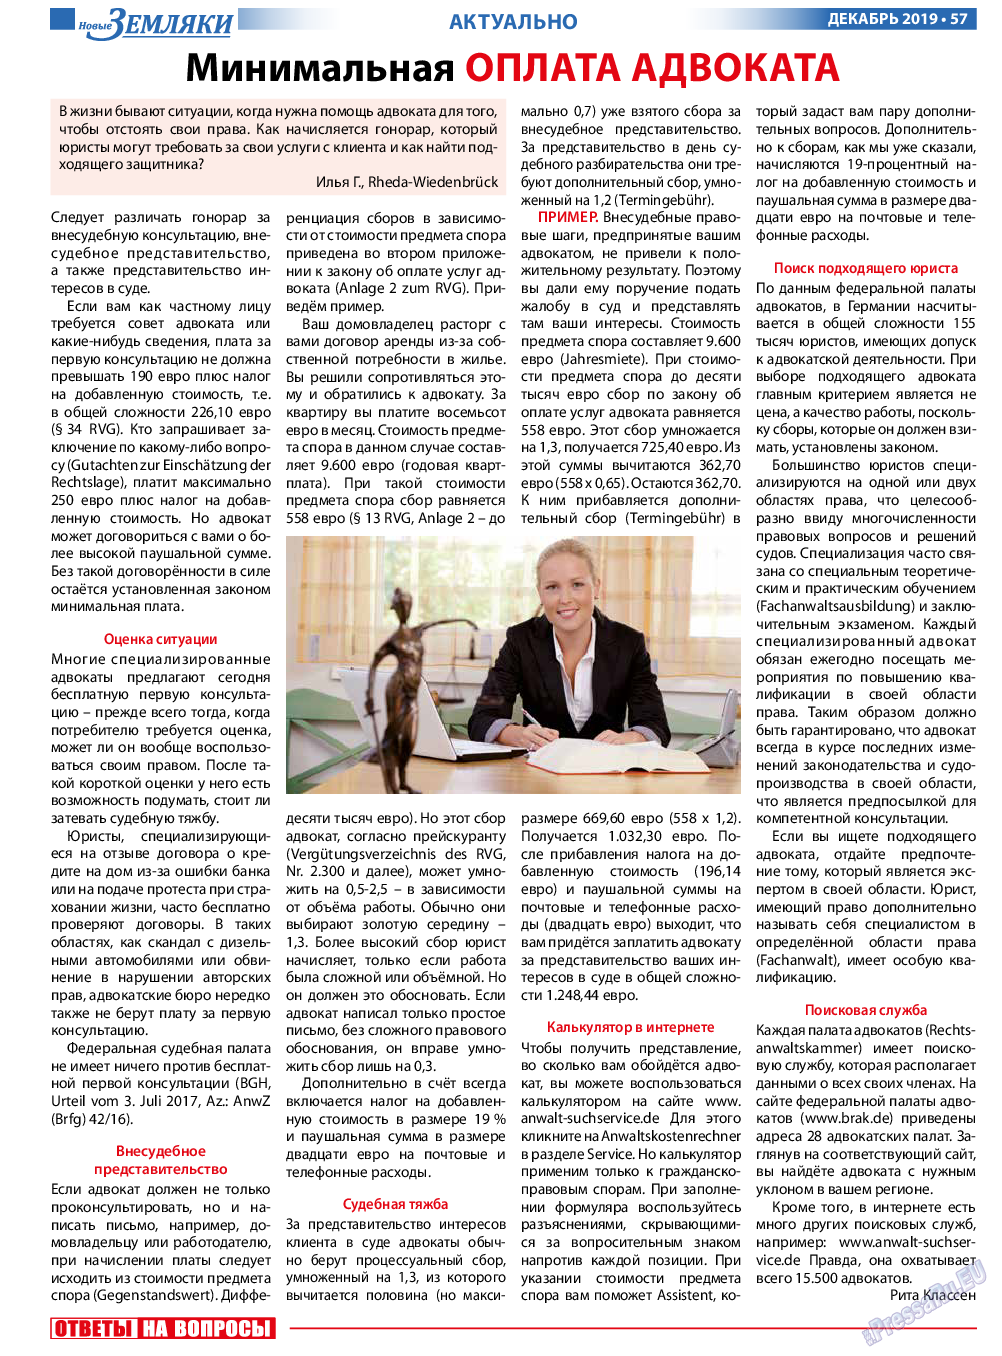 Новые Земляки (газета). 2019 год, номер 12, стр. 57